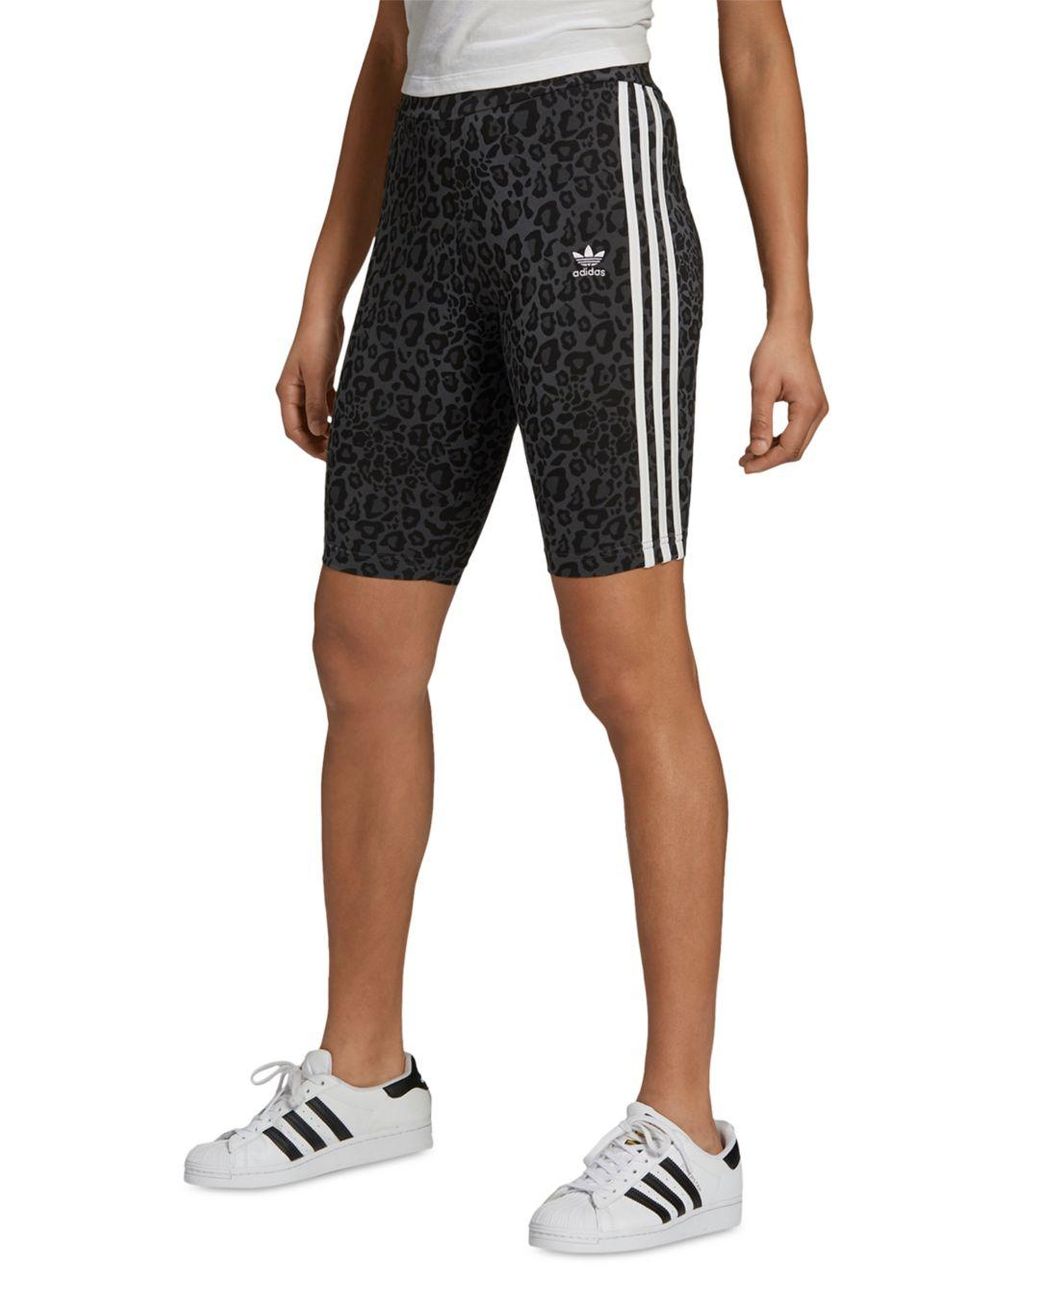 adidas Leopard Print Bike Shorts in Black | Lyst Canada